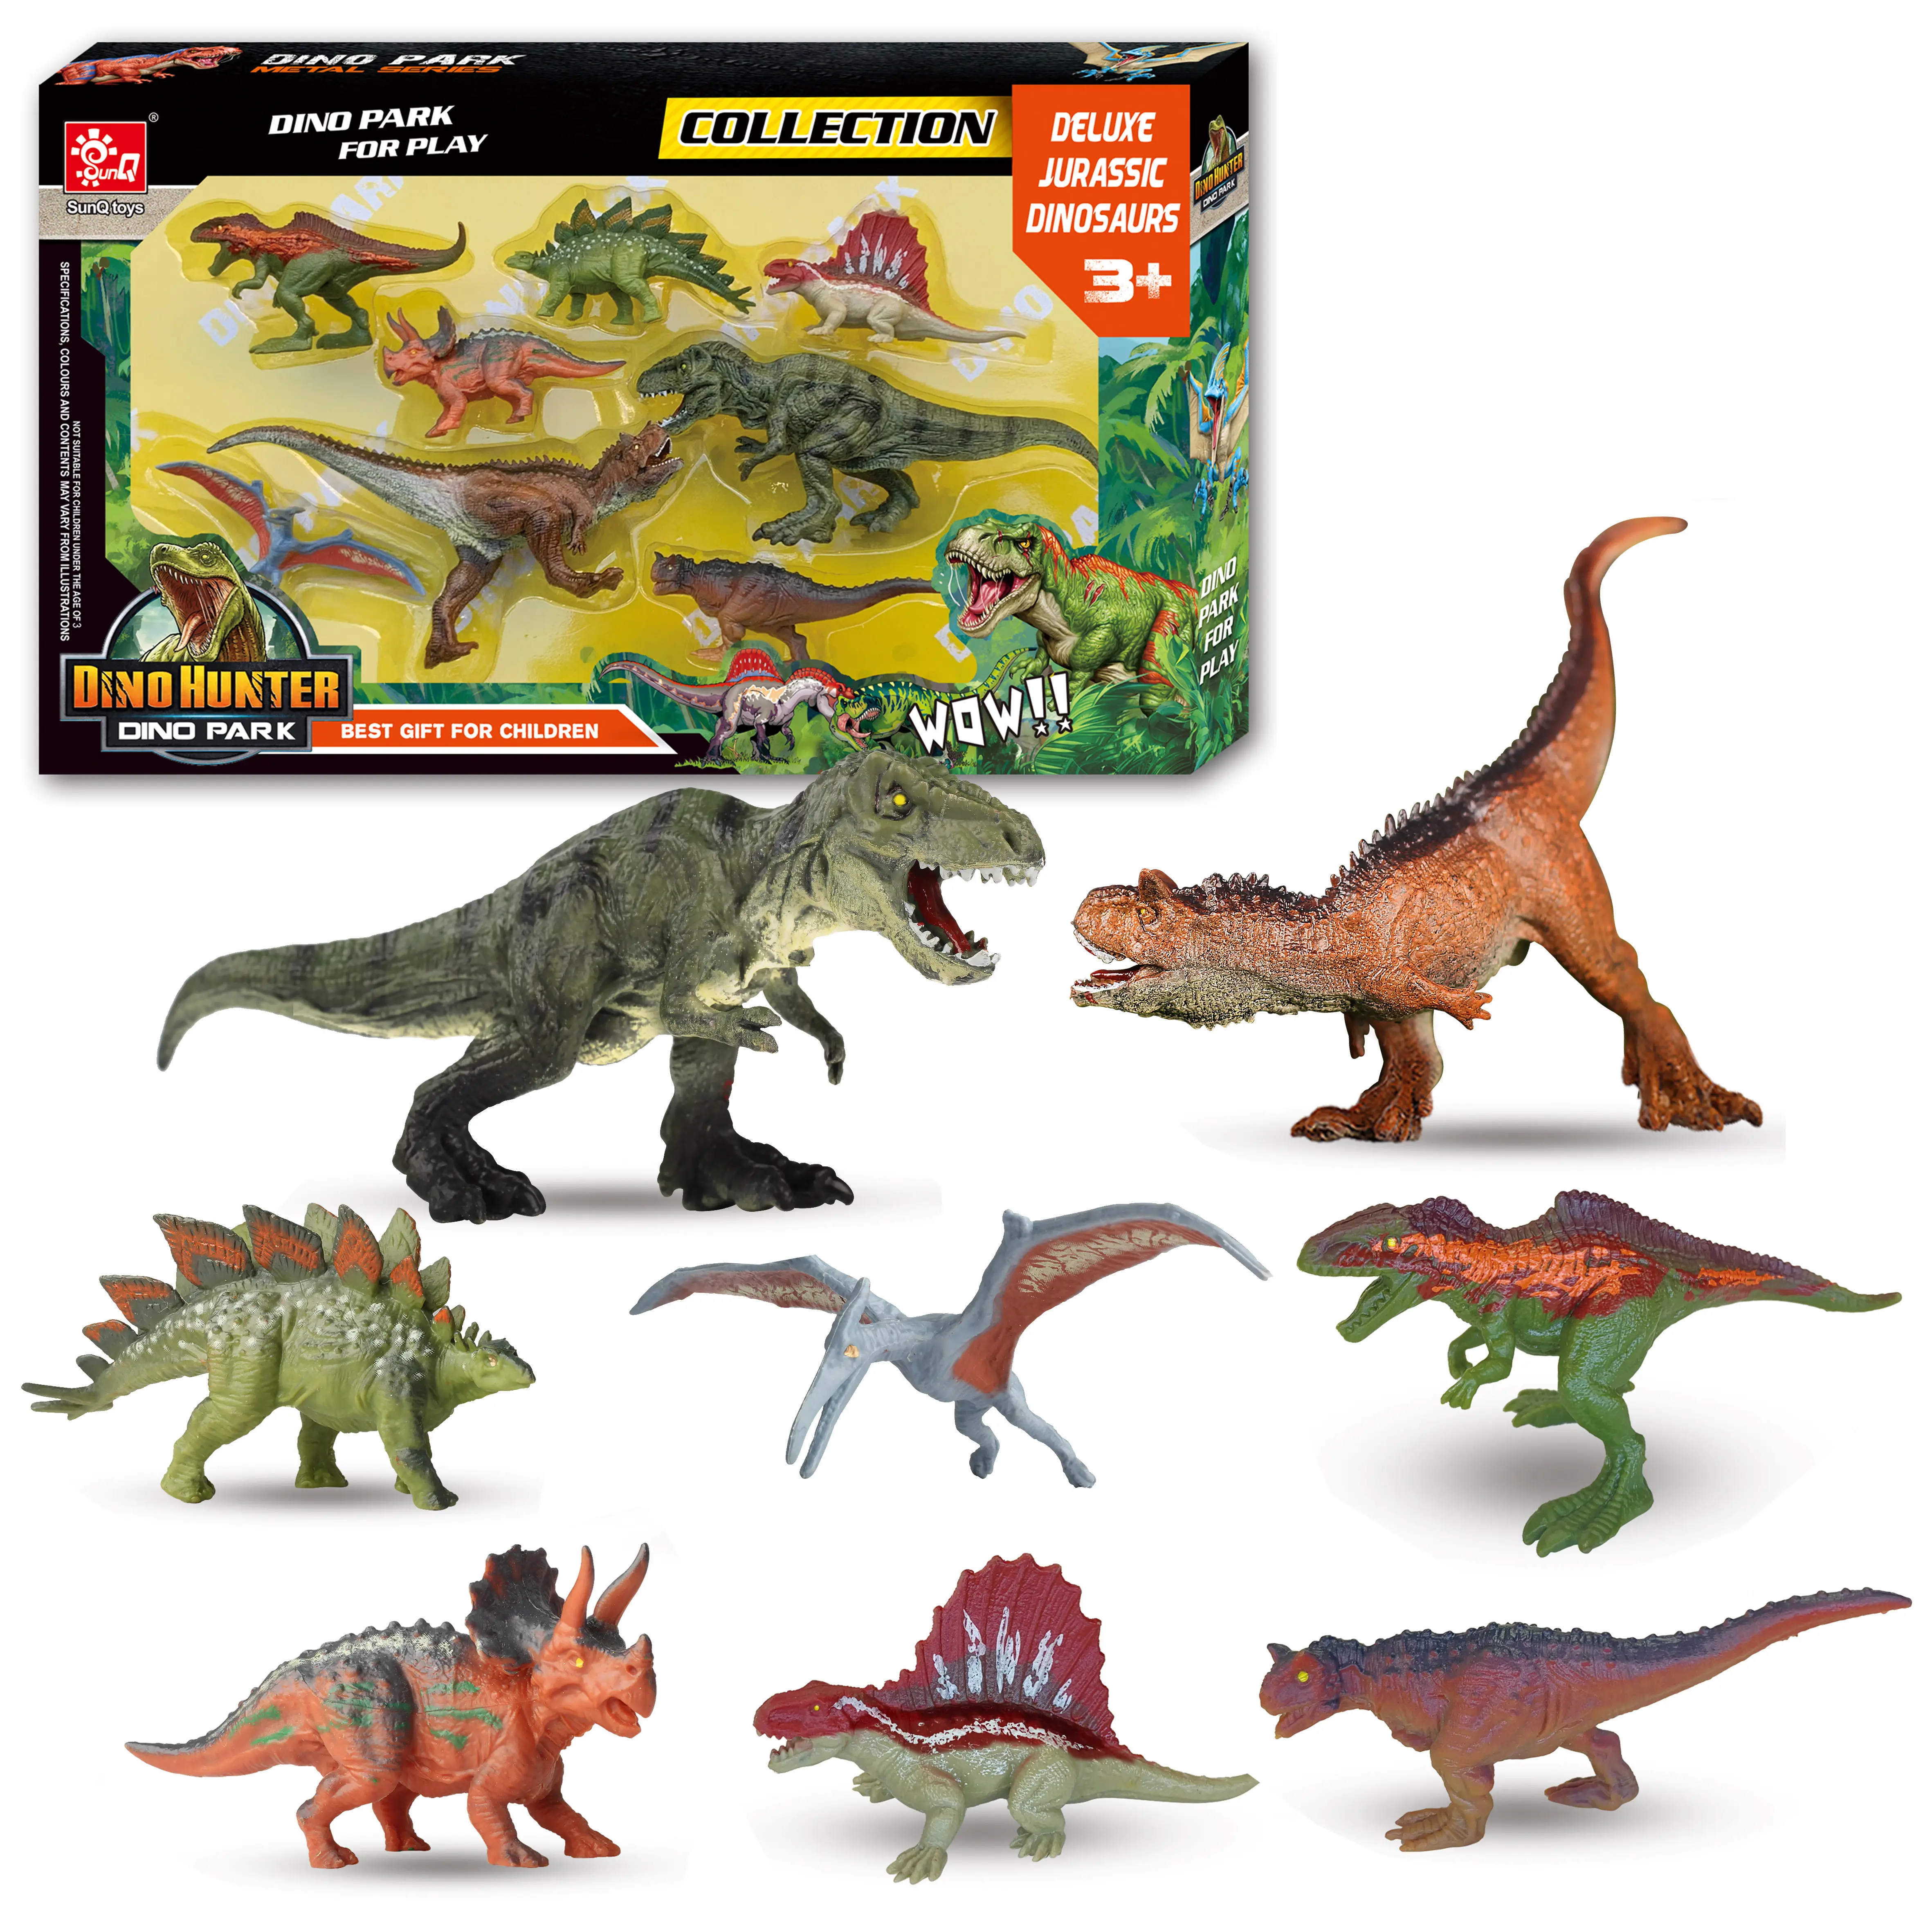 للبيع بالجملة بسعر منخفض من المصنع نموذج ديناصور 8 نموذج واقعي ديناصورات جوراسيك ديناصورات العالم مجموعة ألعاب ديناصور للبيع